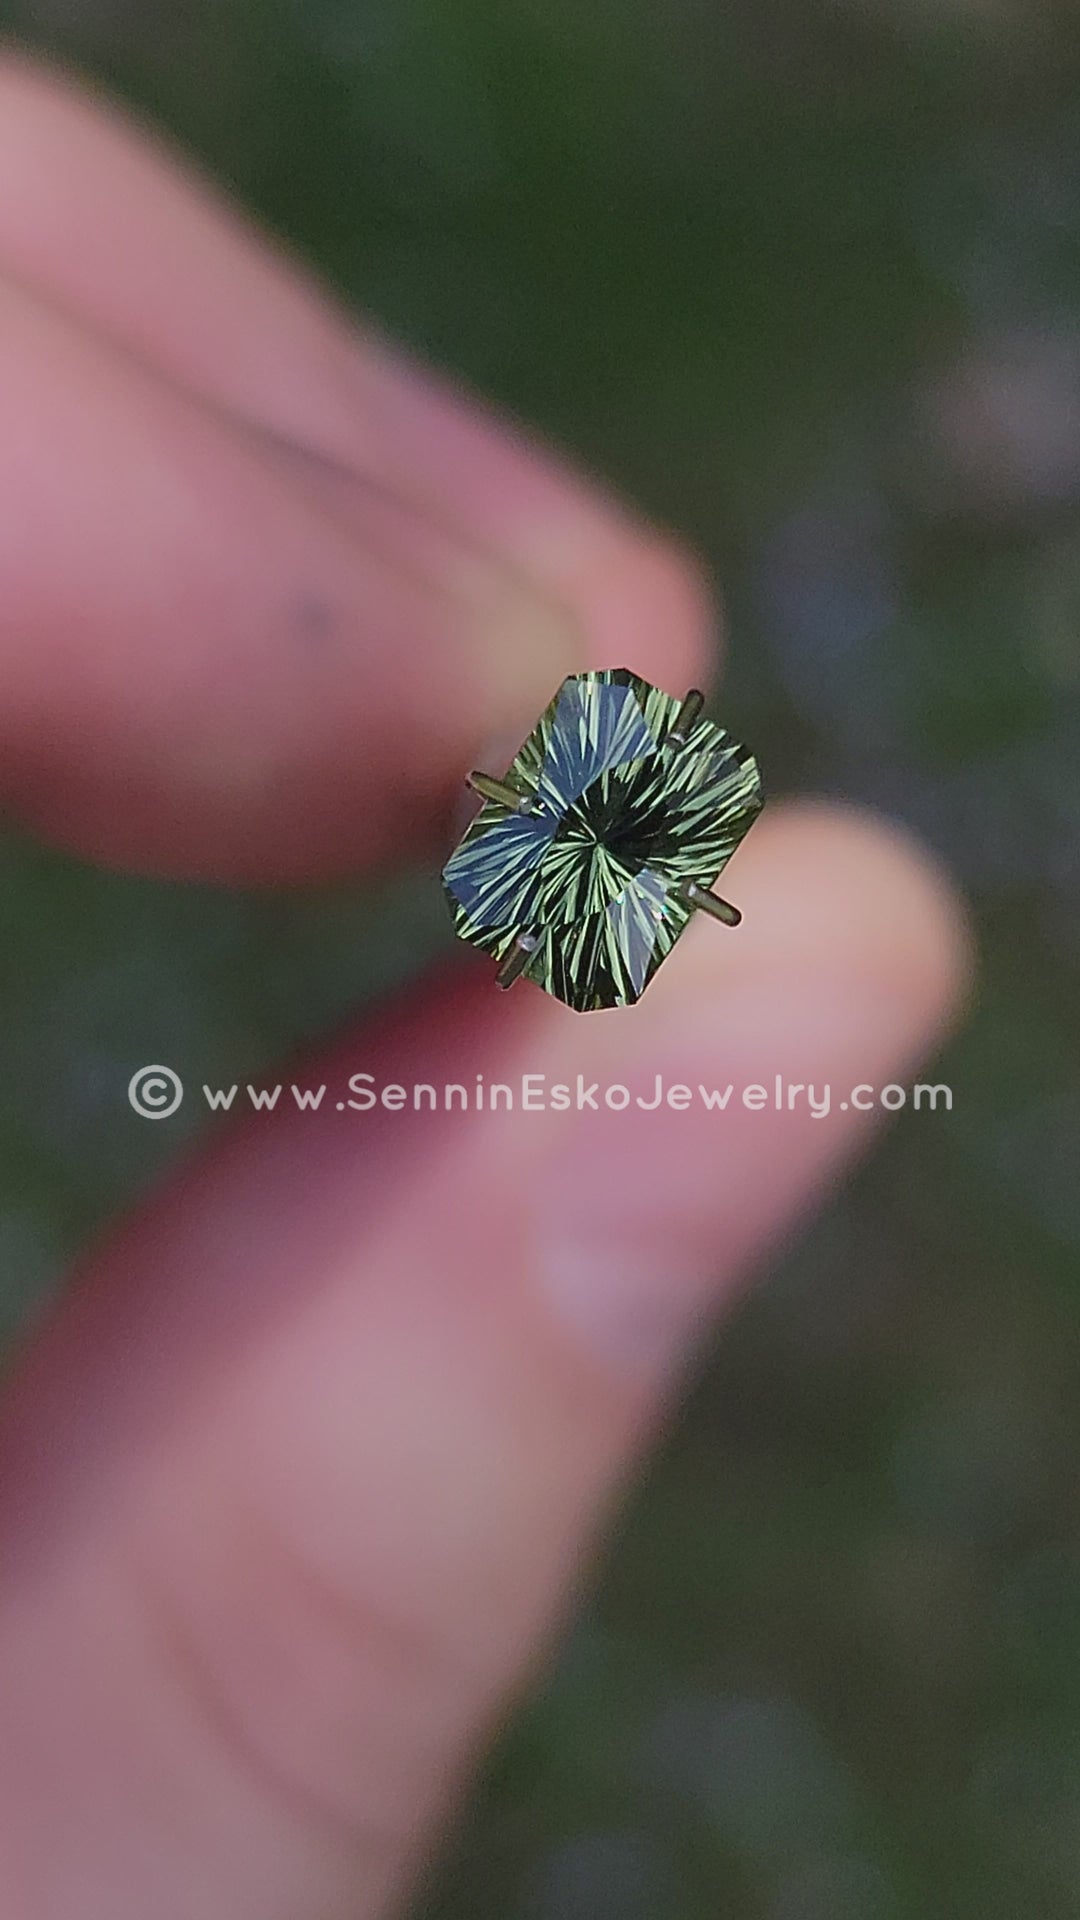 Octogone saphir vert olive 1,42 carat - 7 x 5,2 mm, taille fantaisie